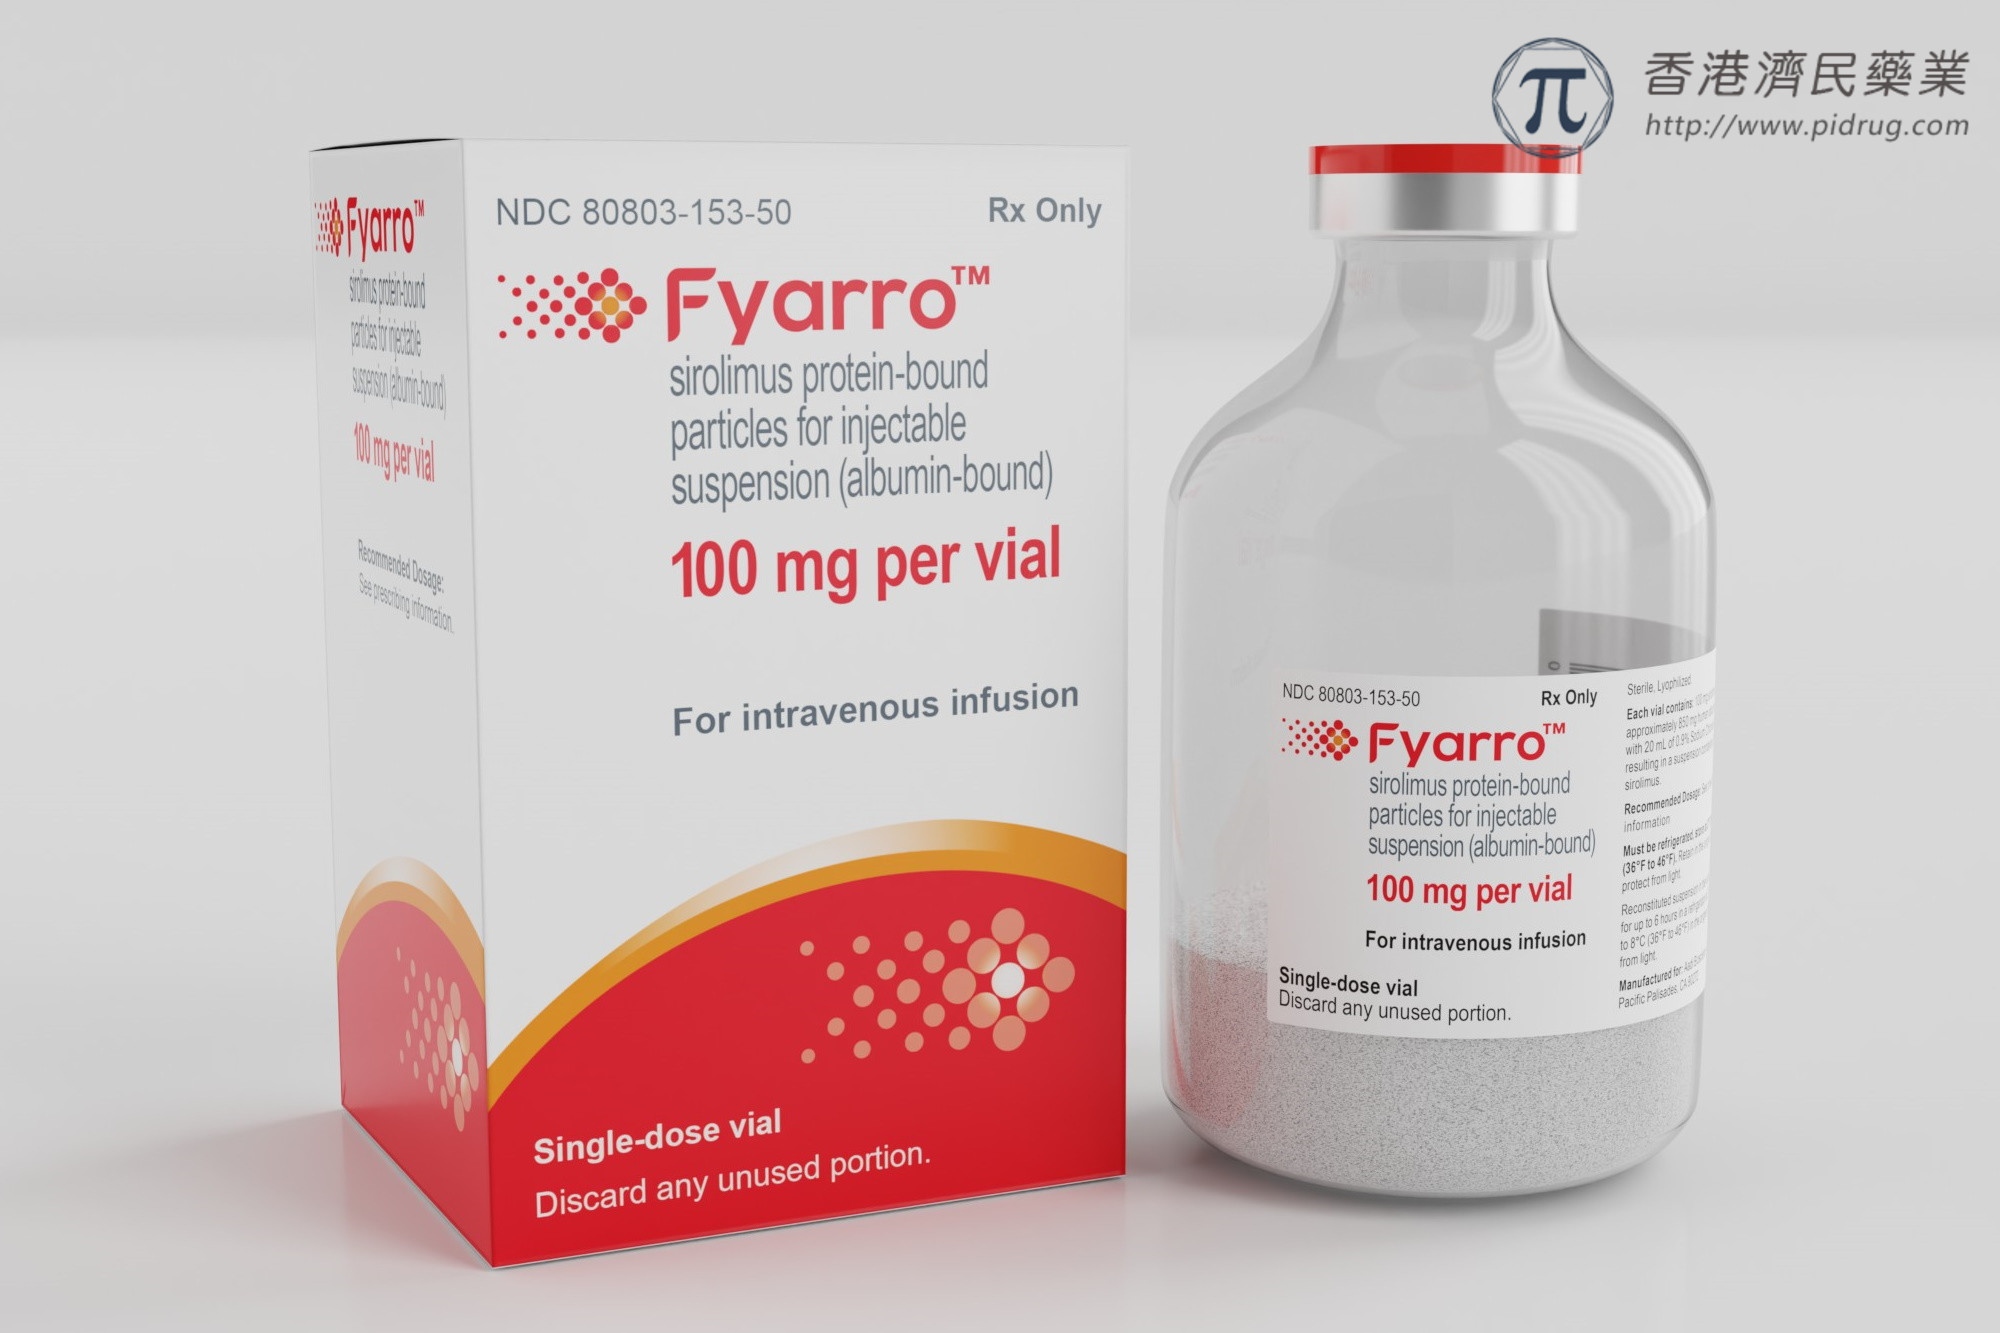 Fyarro(西罗莫司白蛋白结合型纳米颗粒)治疗罕见肉瘤疗效及安全性如何？_香港济民药业